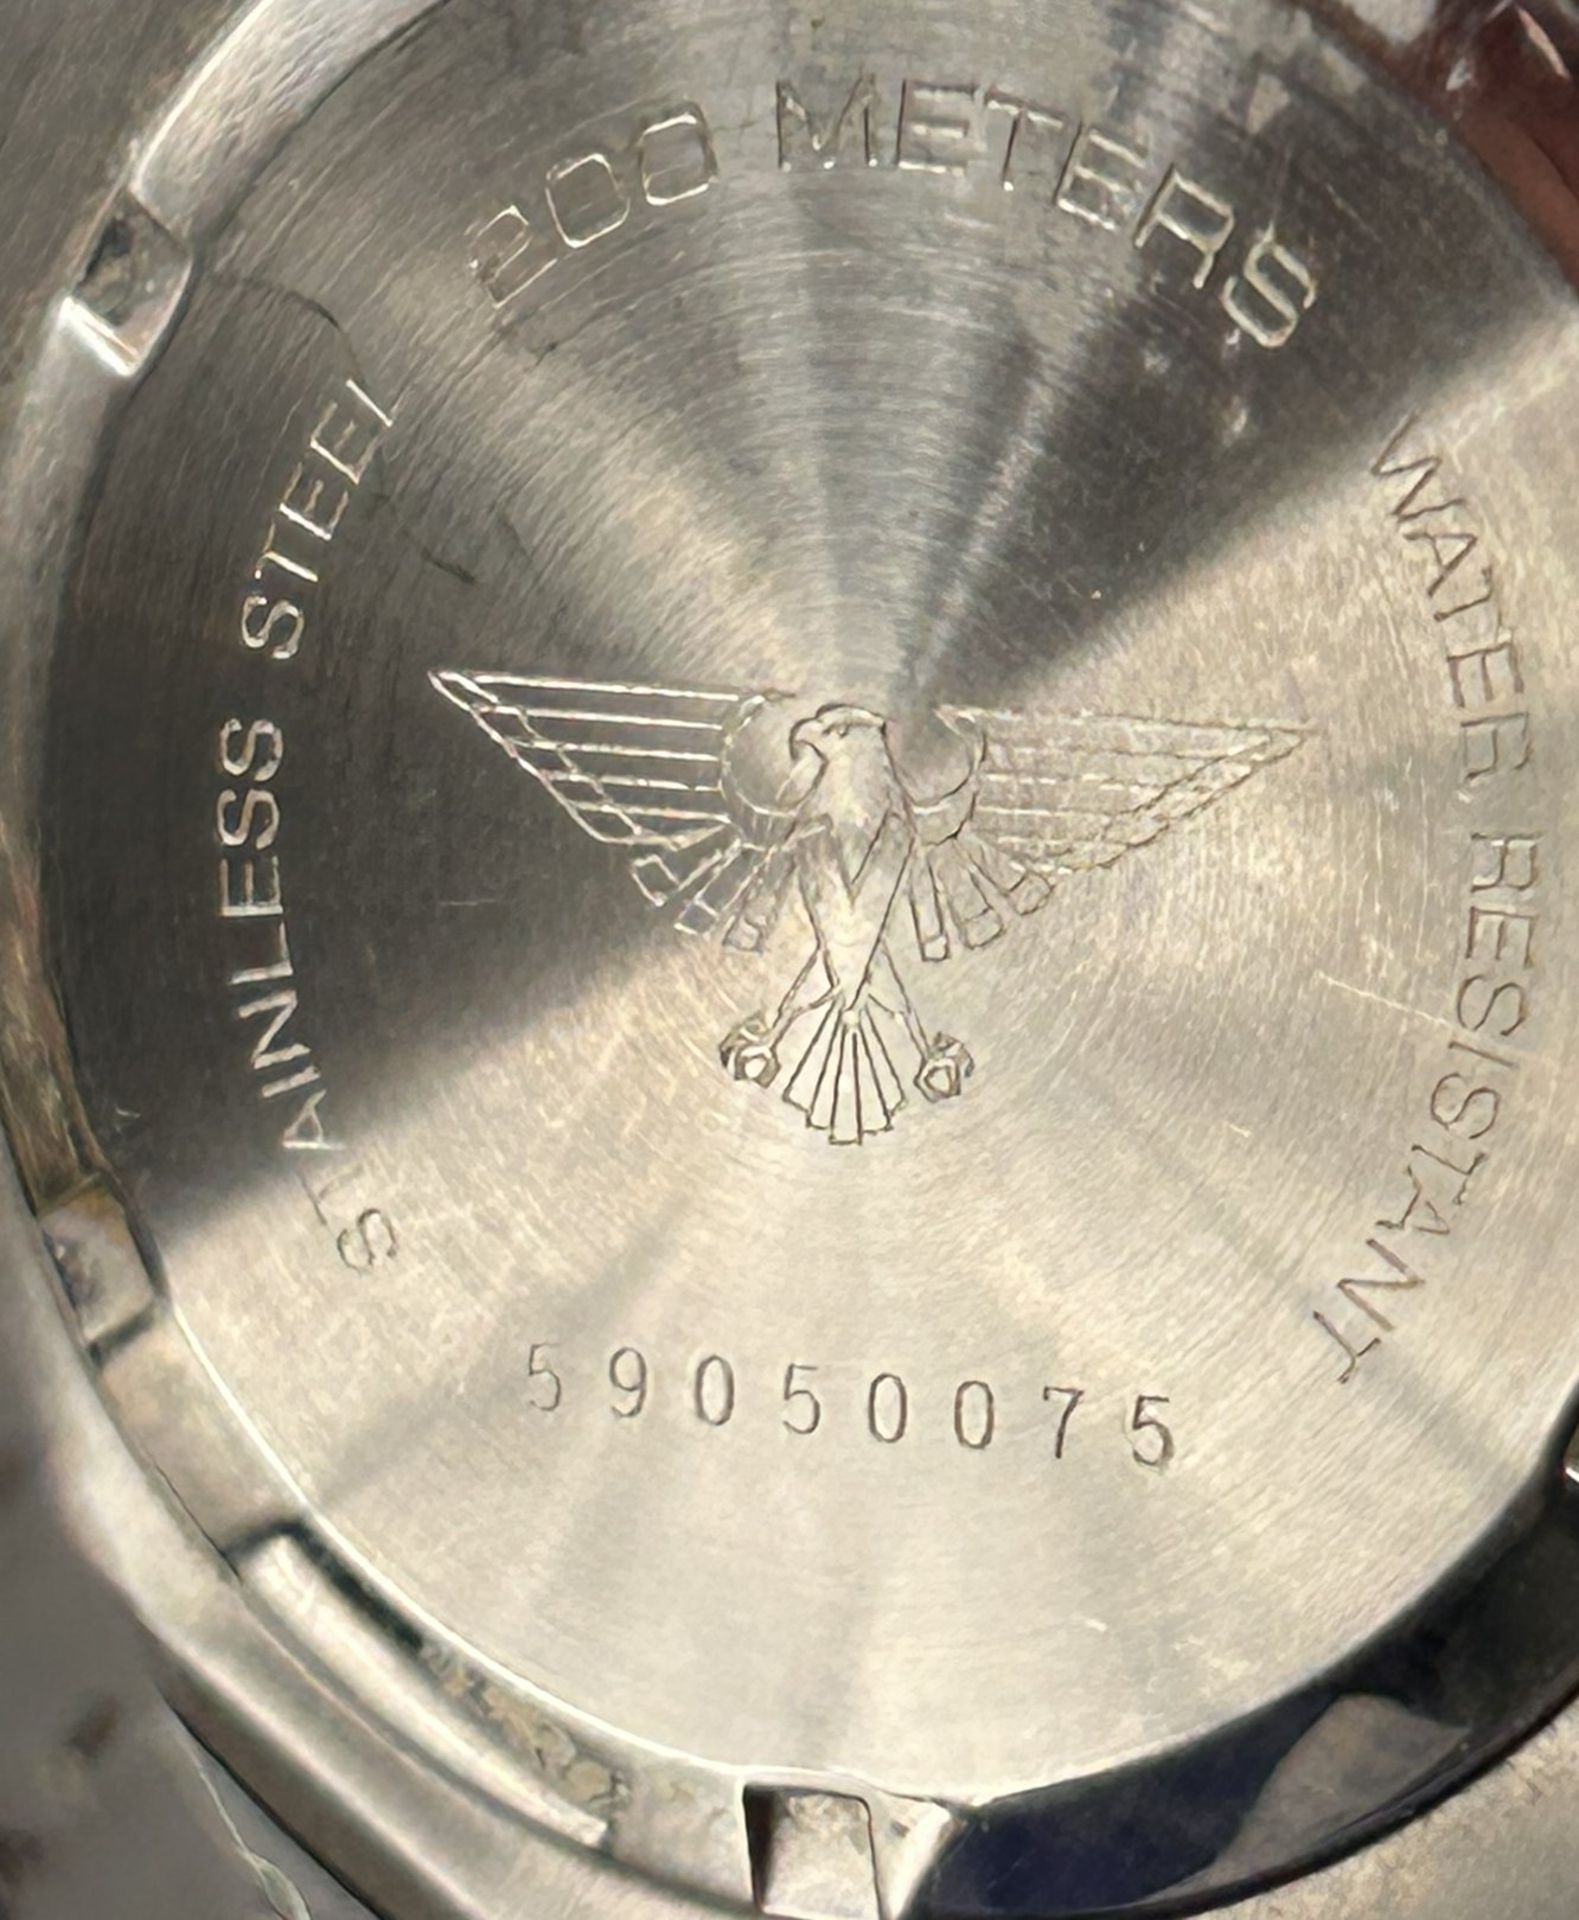 Army watch chrono, 200 m, Stahlband, Nr. 59050075, nicht überprüft - Bild 4 aus 4